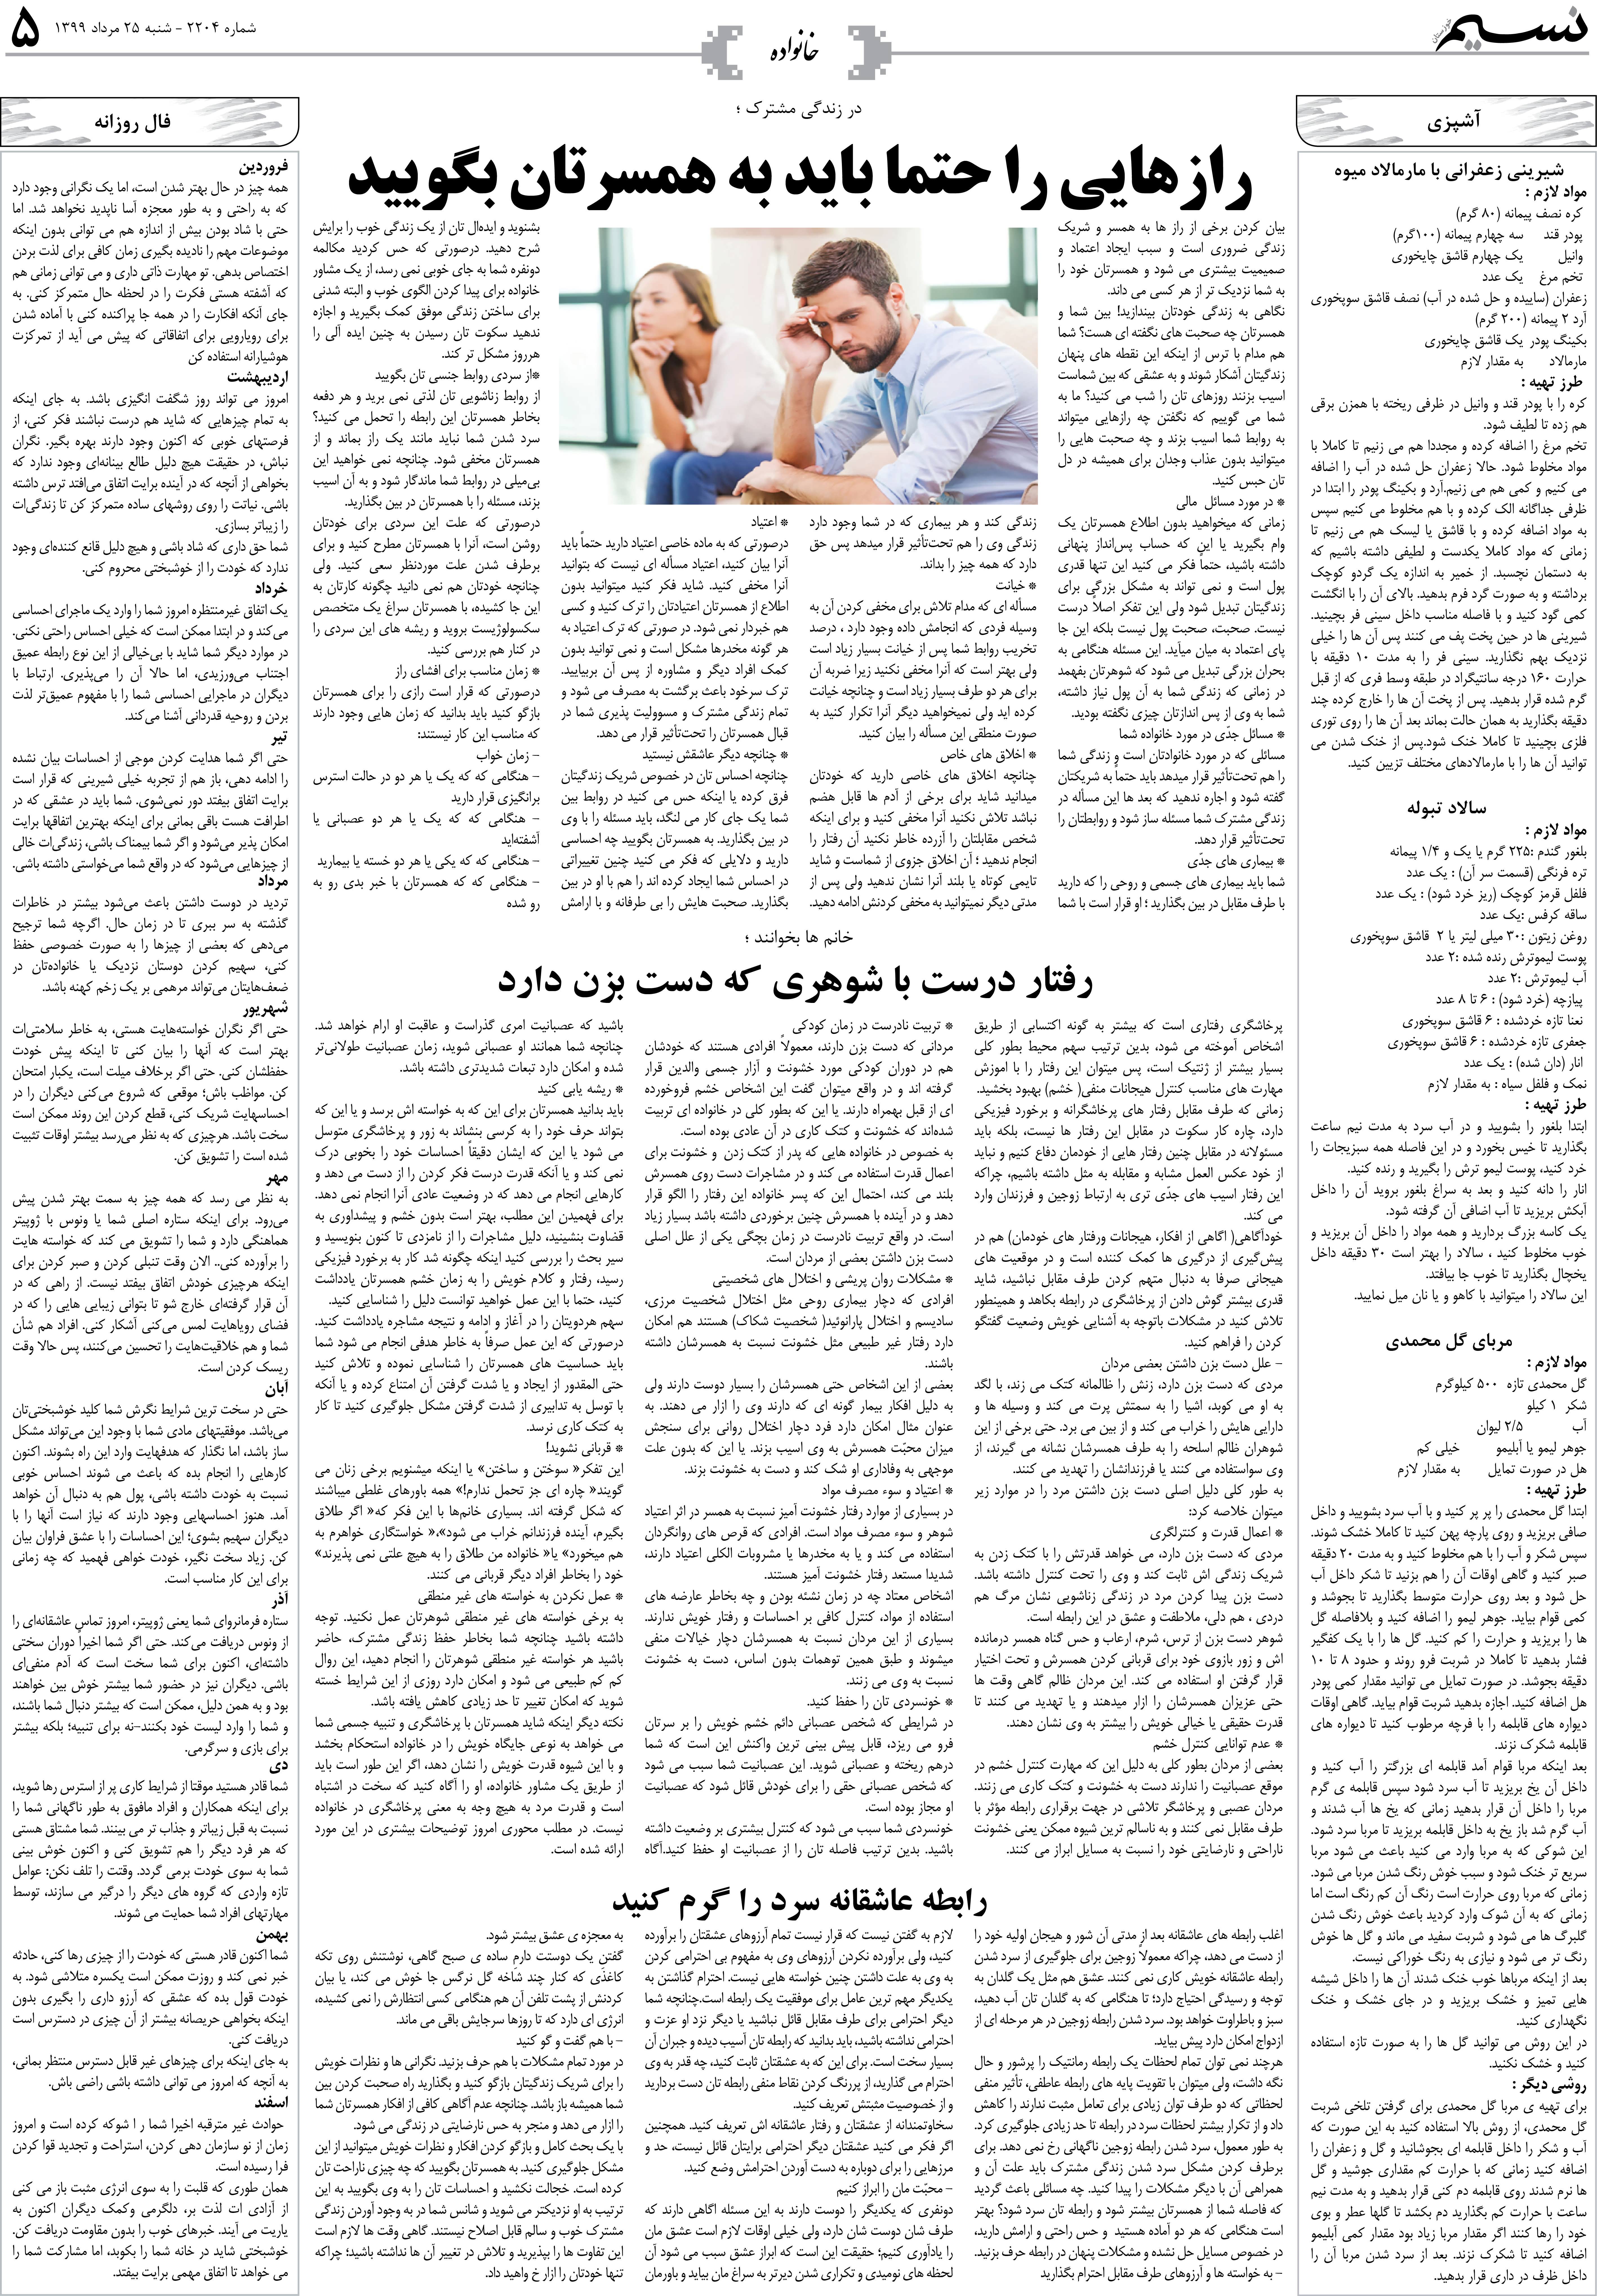 صفحه خانواده روزنامه نسیم شماره 2204